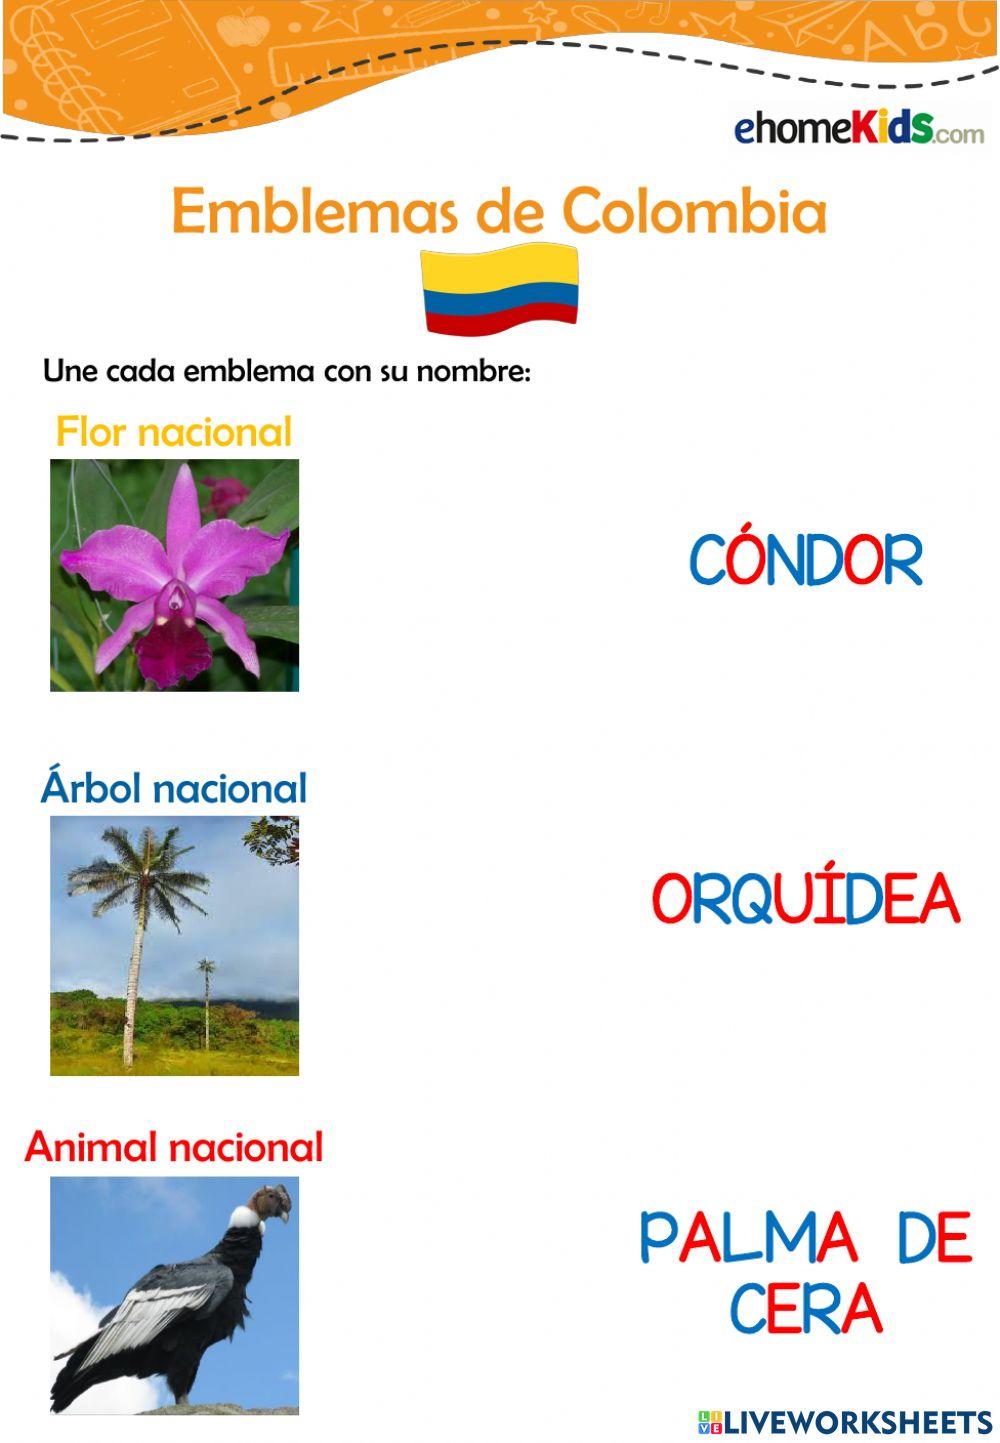 Emblema de Colombia